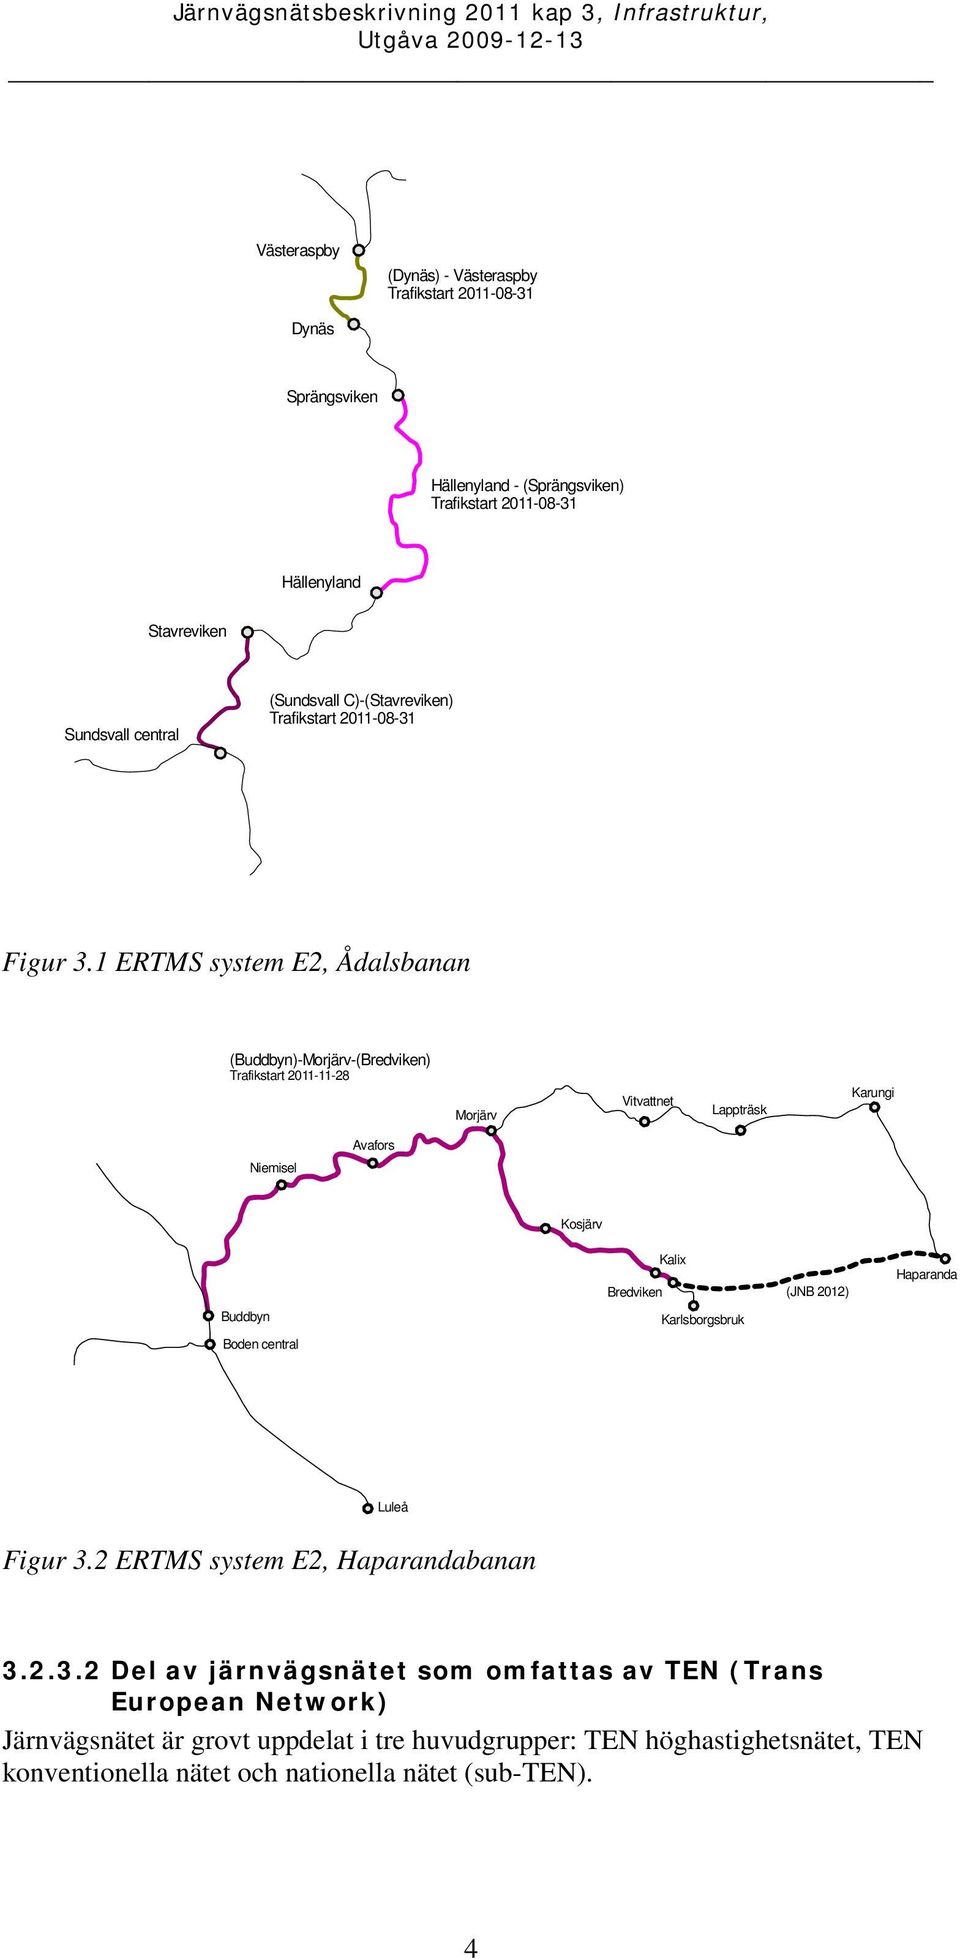 1 ERTMS system E2, Ådalsbanan (Buddbyn)-Morjärv-(Bredviken) Trafikstart 2011-11-28 Morjärv Vitvattnet Lappträsk Karungi Niemisel Avafors Kosjärv Bredviken Kalix (JNB 2012)